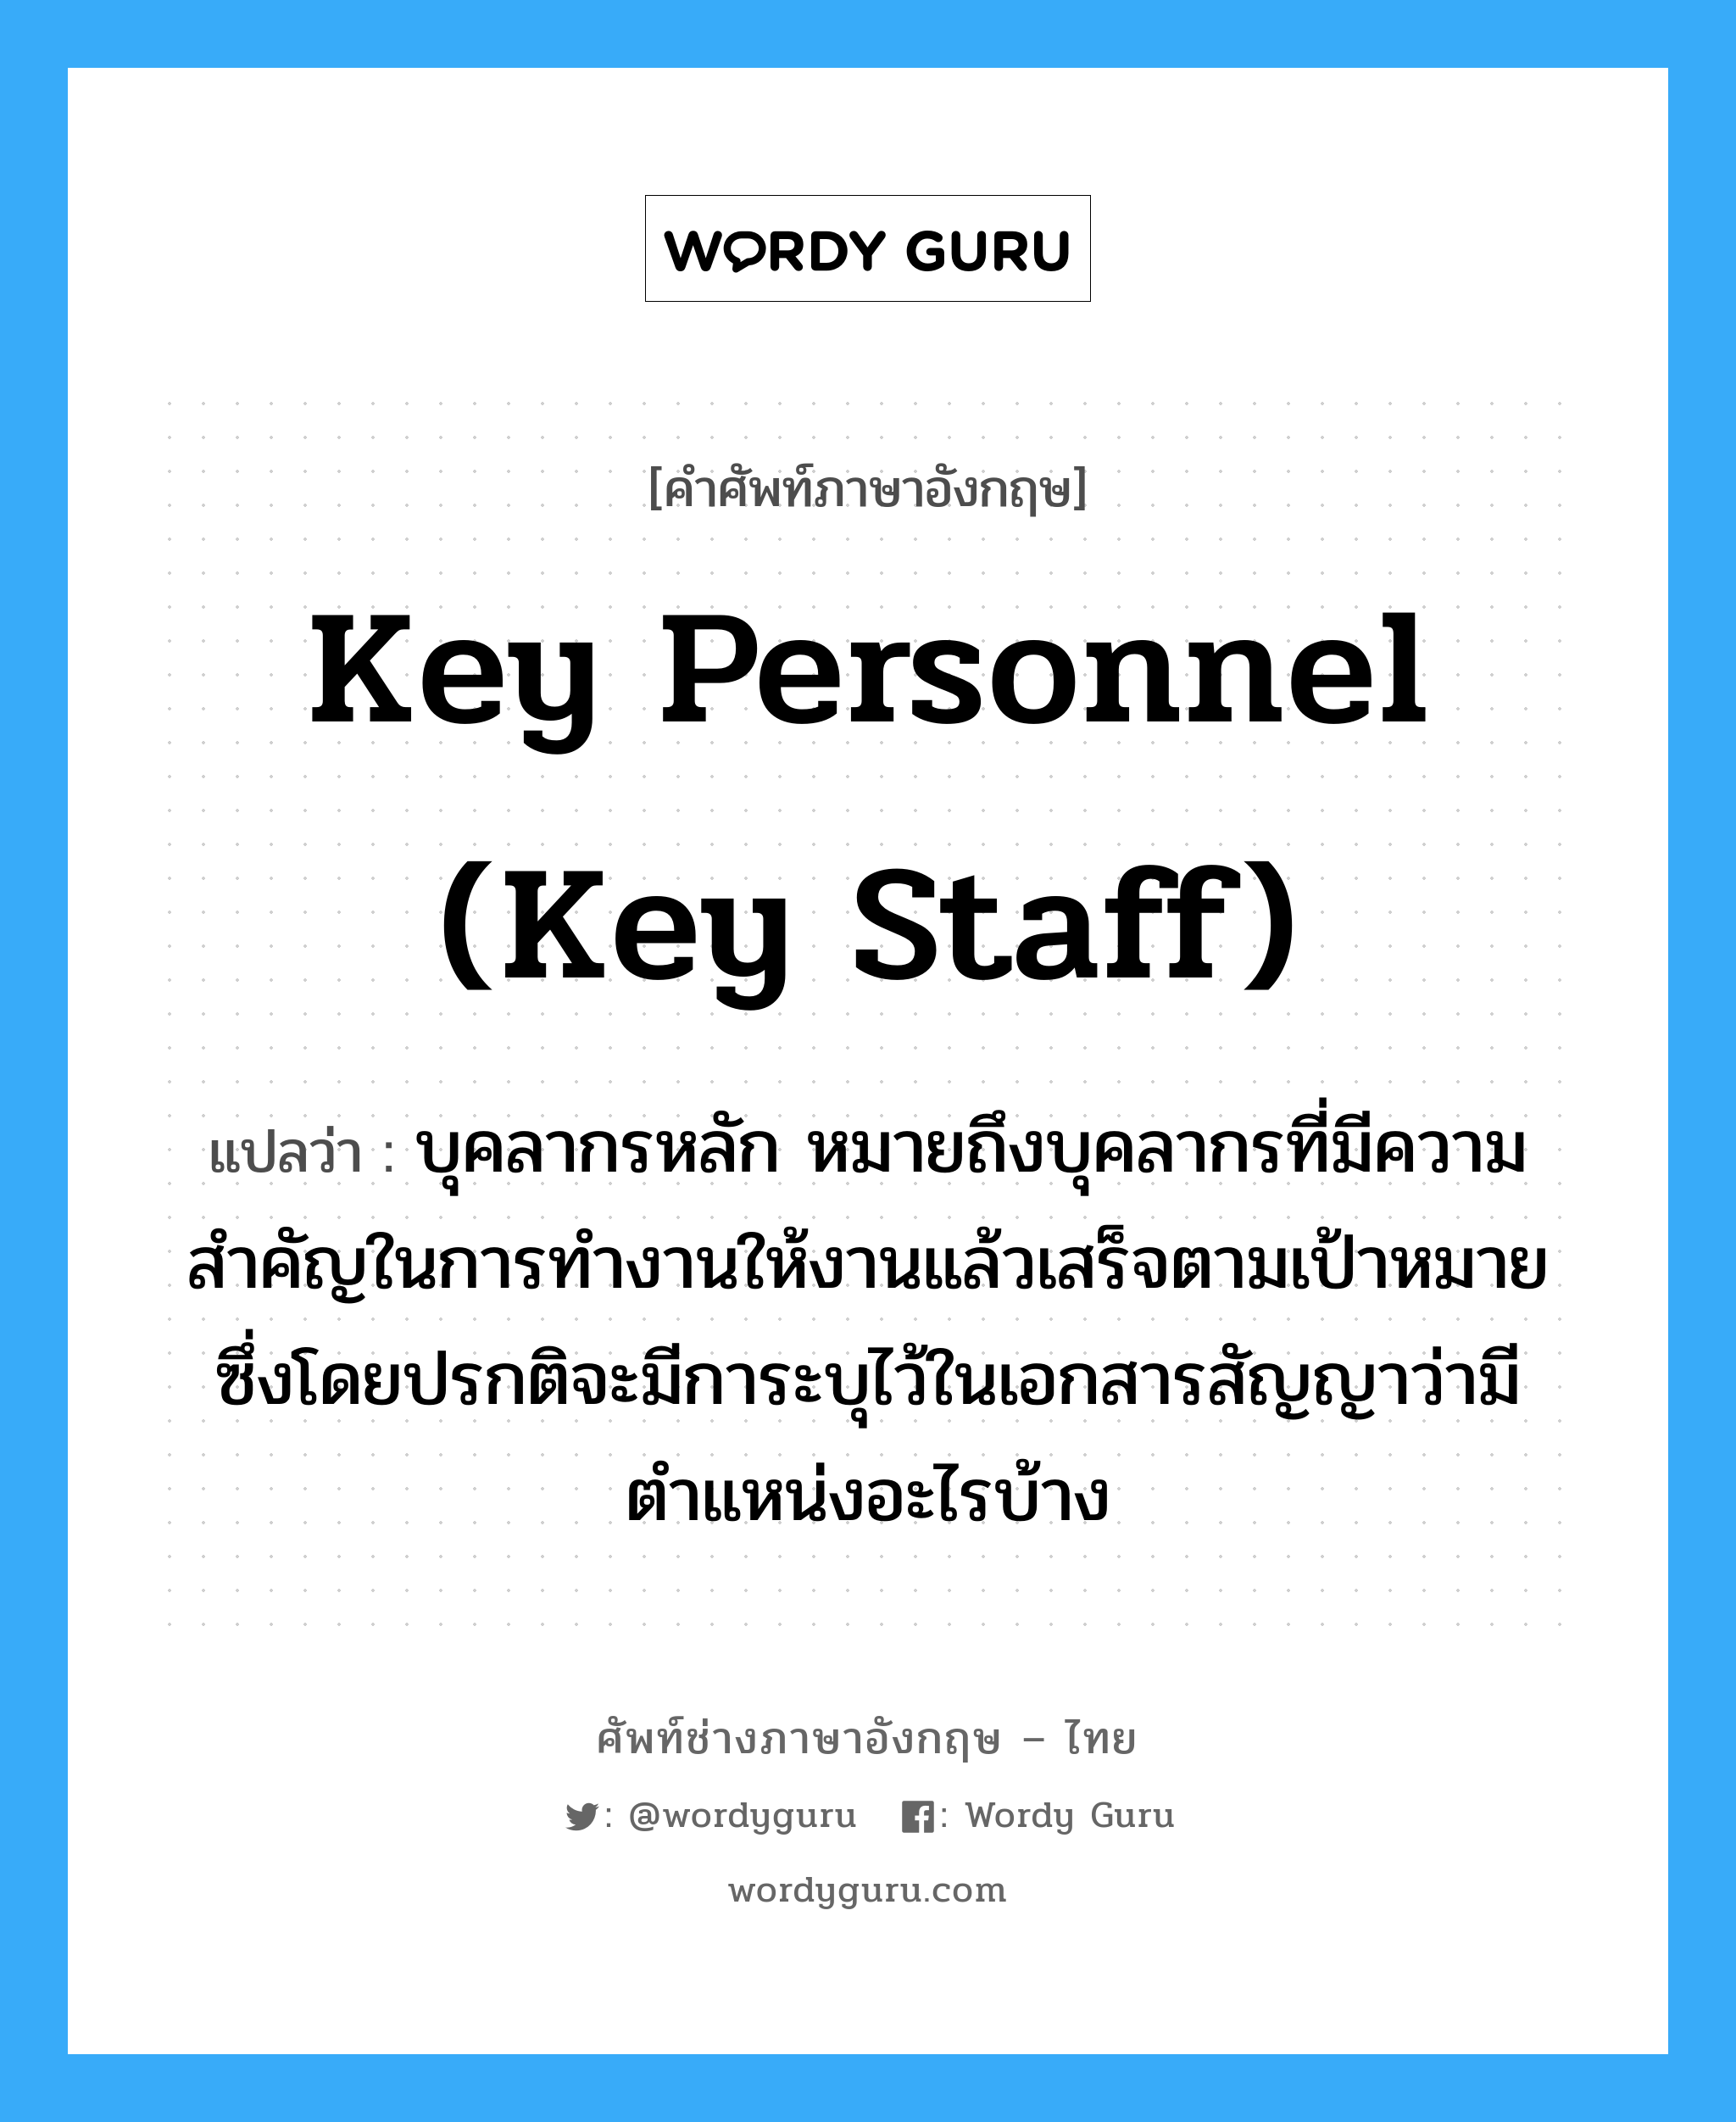 Key Personnel (Key Staff) แปลว่า?, คำศัพท์ช่างภาษาอังกฤษ - ไทย Key Personnel (Key Staff) คำศัพท์ภาษาอังกฤษ Key Personnel (Key Staff) แปลว่า บุคลากรหลัก หมายถึงบุคลากรที่มีความสำคัญในการทำงานให้งานแล้วเสร็จตามเป้าหมาย ซึ่งโดยปรกติจะมีการะบุไว้ในเอกสารสัญญาว่ามีตำแหน่งอะไรบ้าง